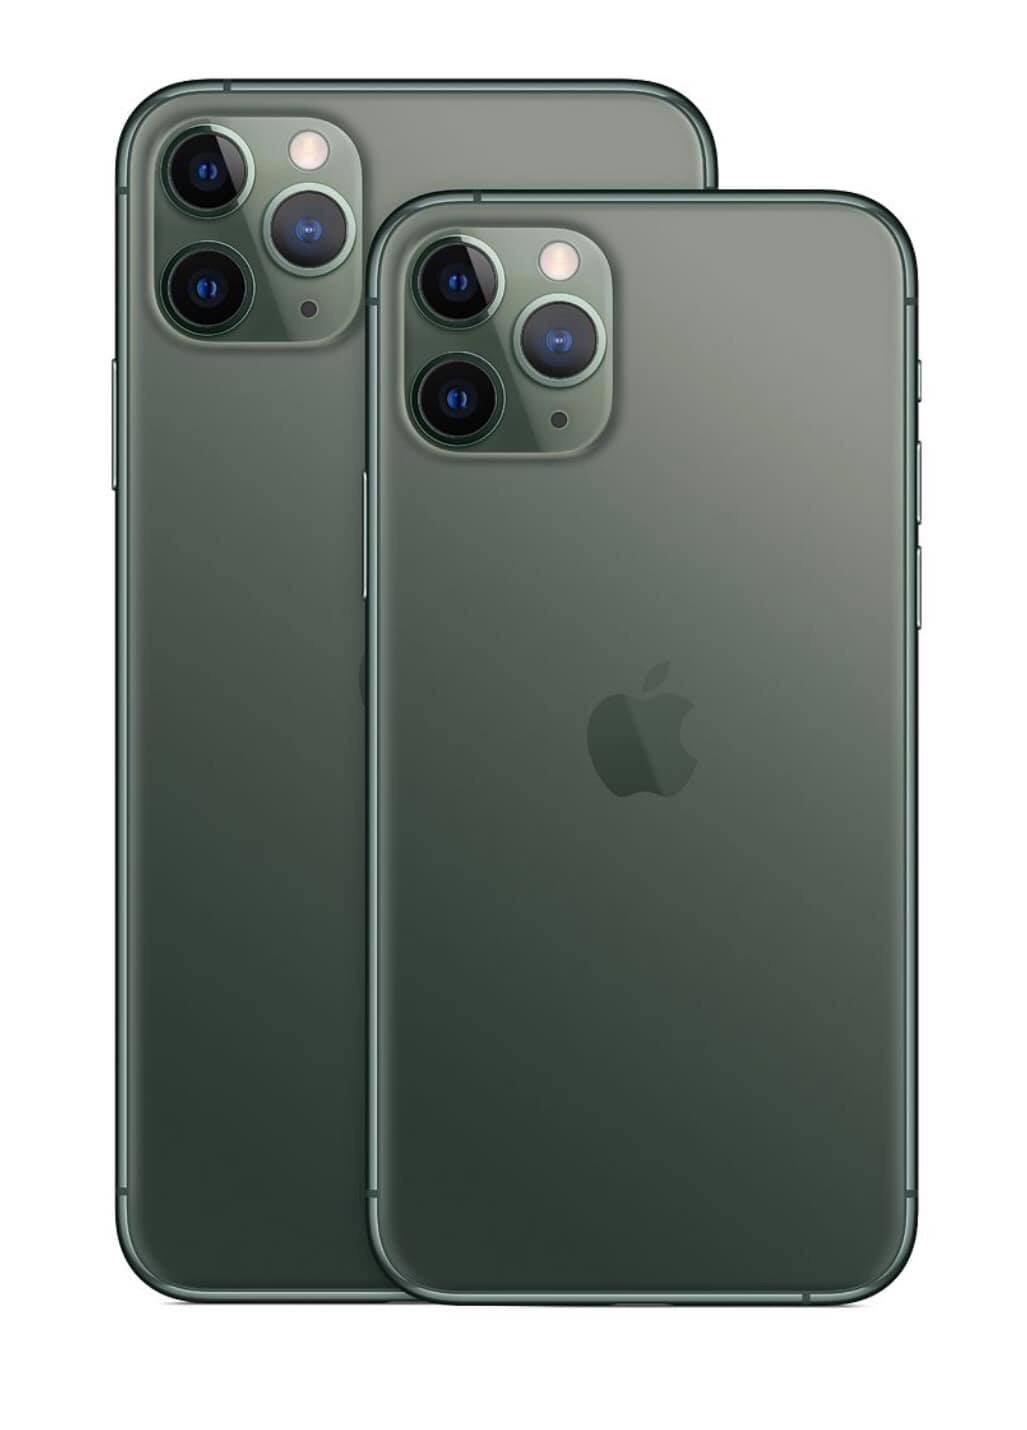 Ảnh chi tiết iPhone 11 Pro, Pro Max giá lên đến 1.449 USD